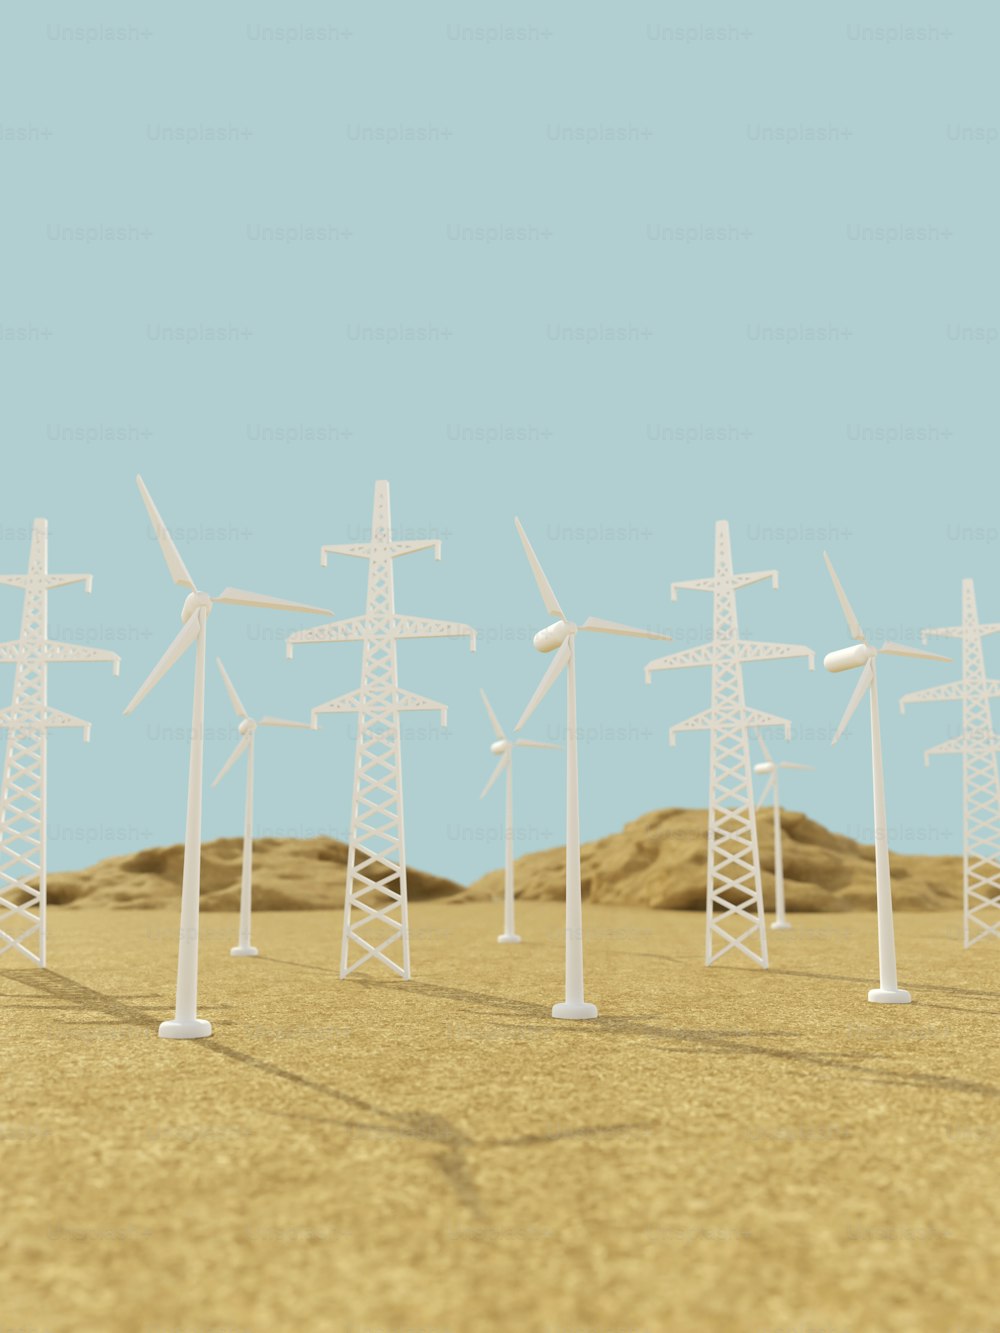 Una hilera de turbinas eólicas en un desierto